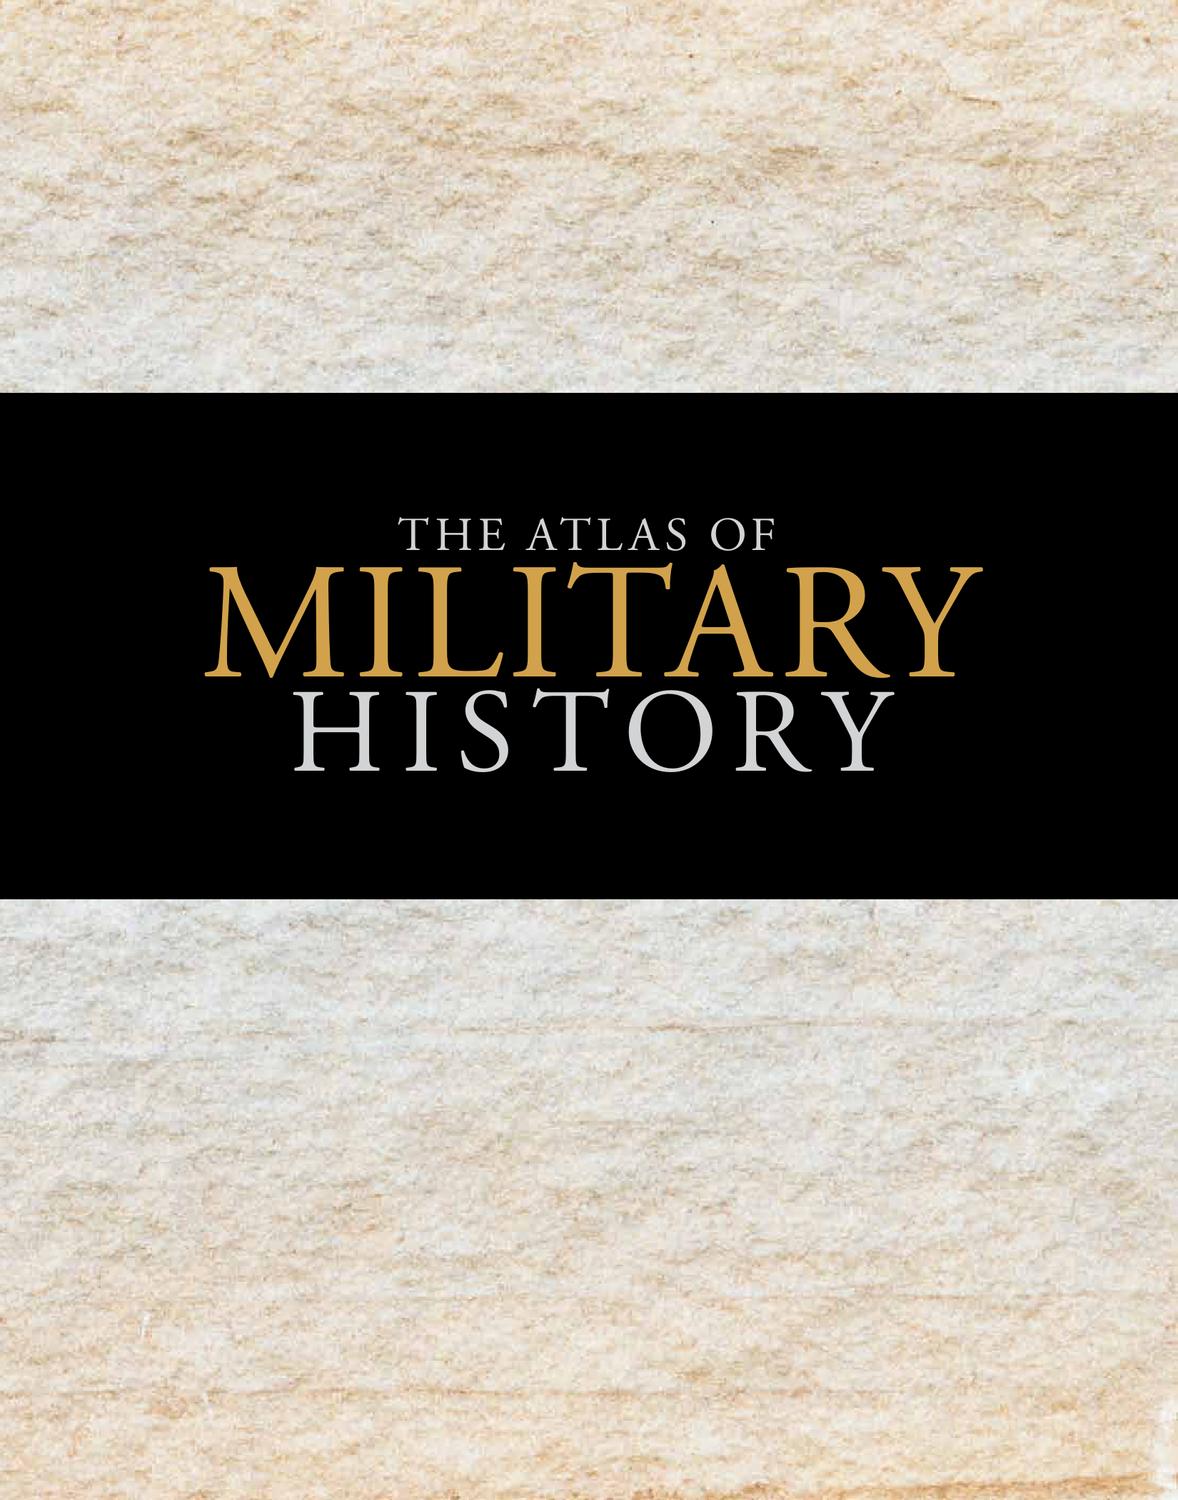 Atlas of Military History by Amanda Lomazoff